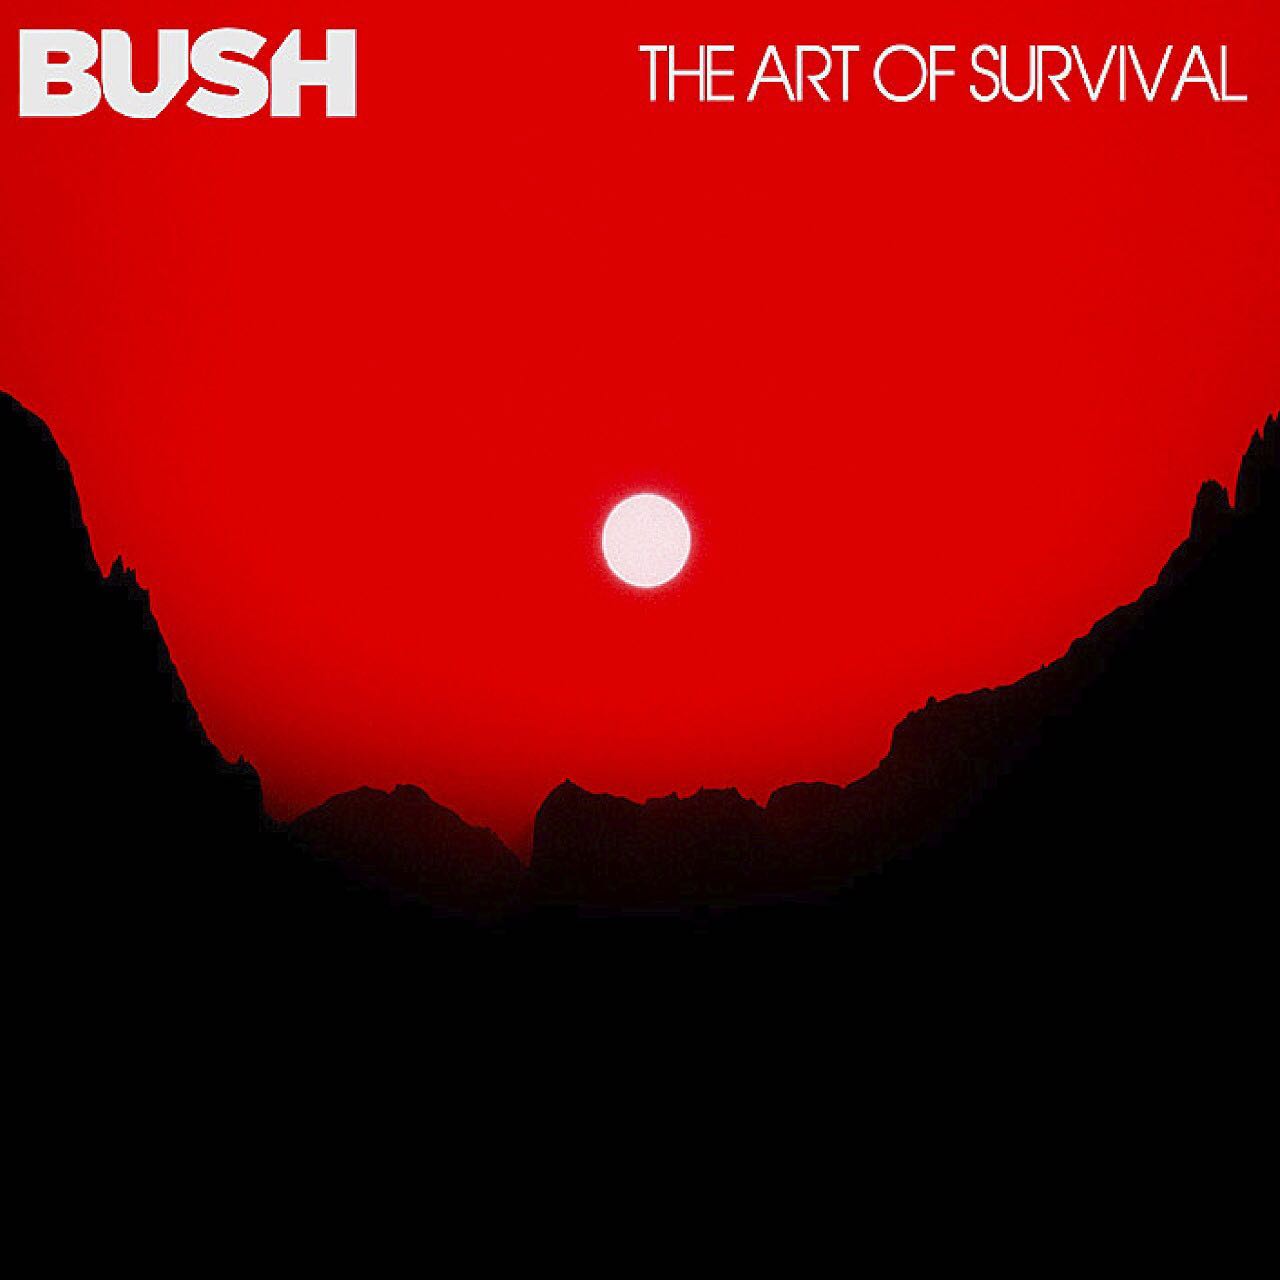 The Art of Survival Bush